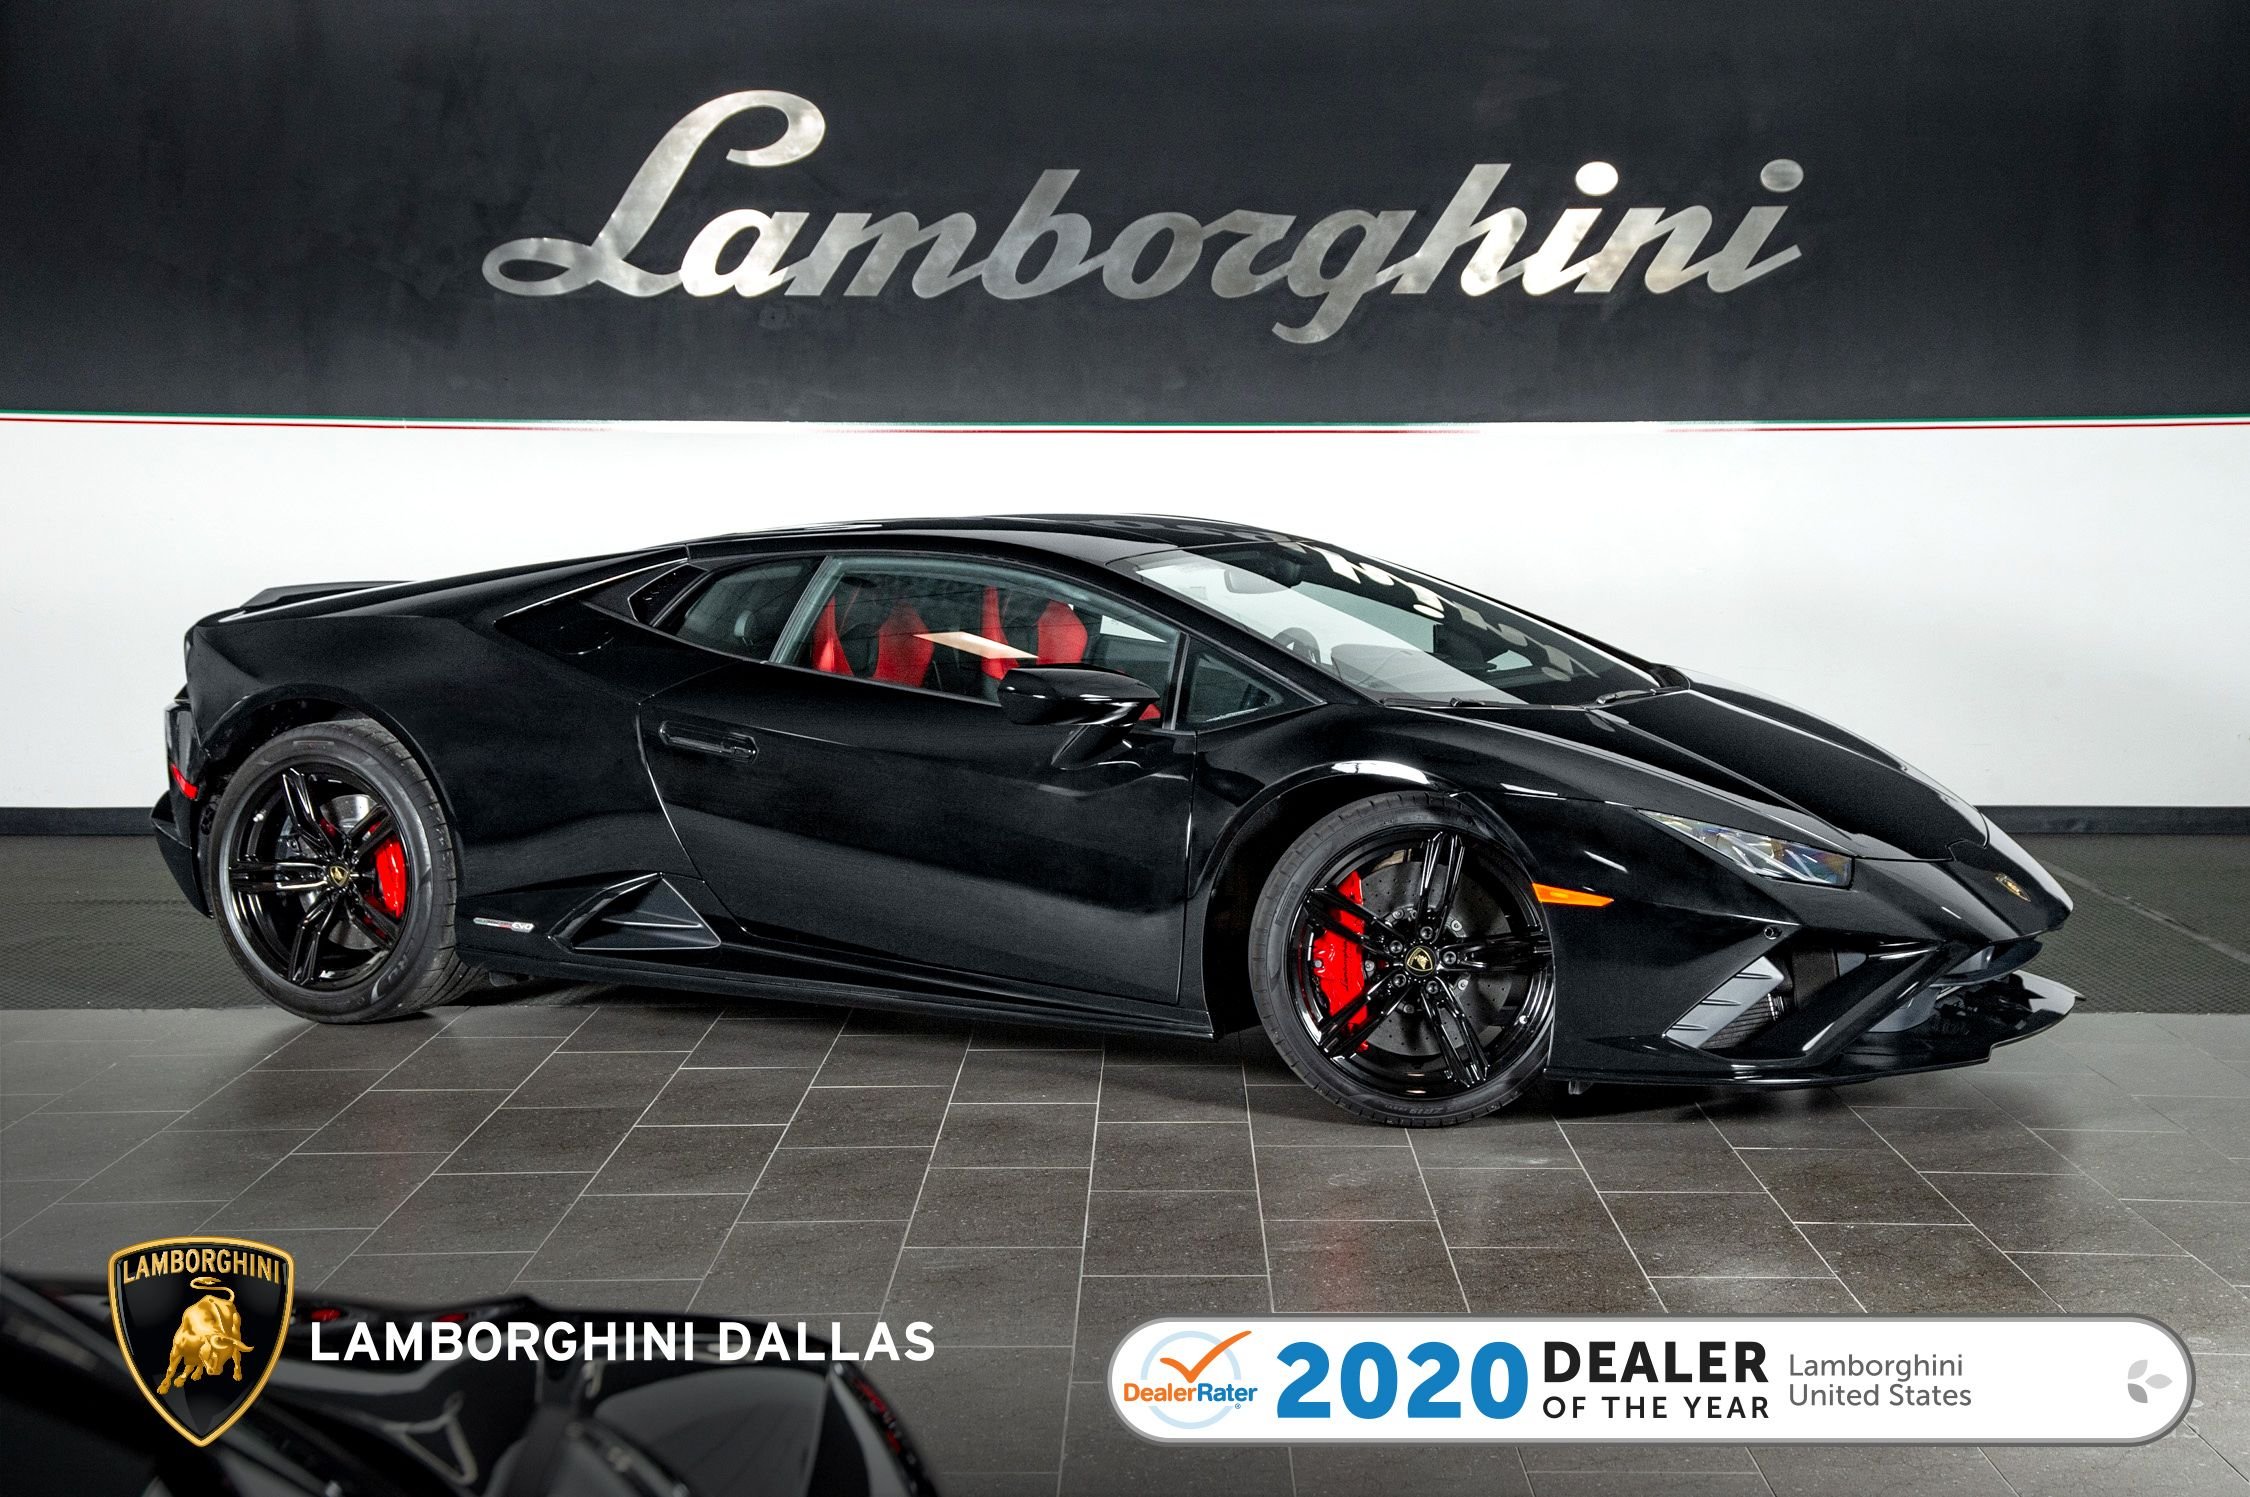 New 2020 Lamborghini Huracan EVO For Sale at LAMBORGHINI DALLAS 